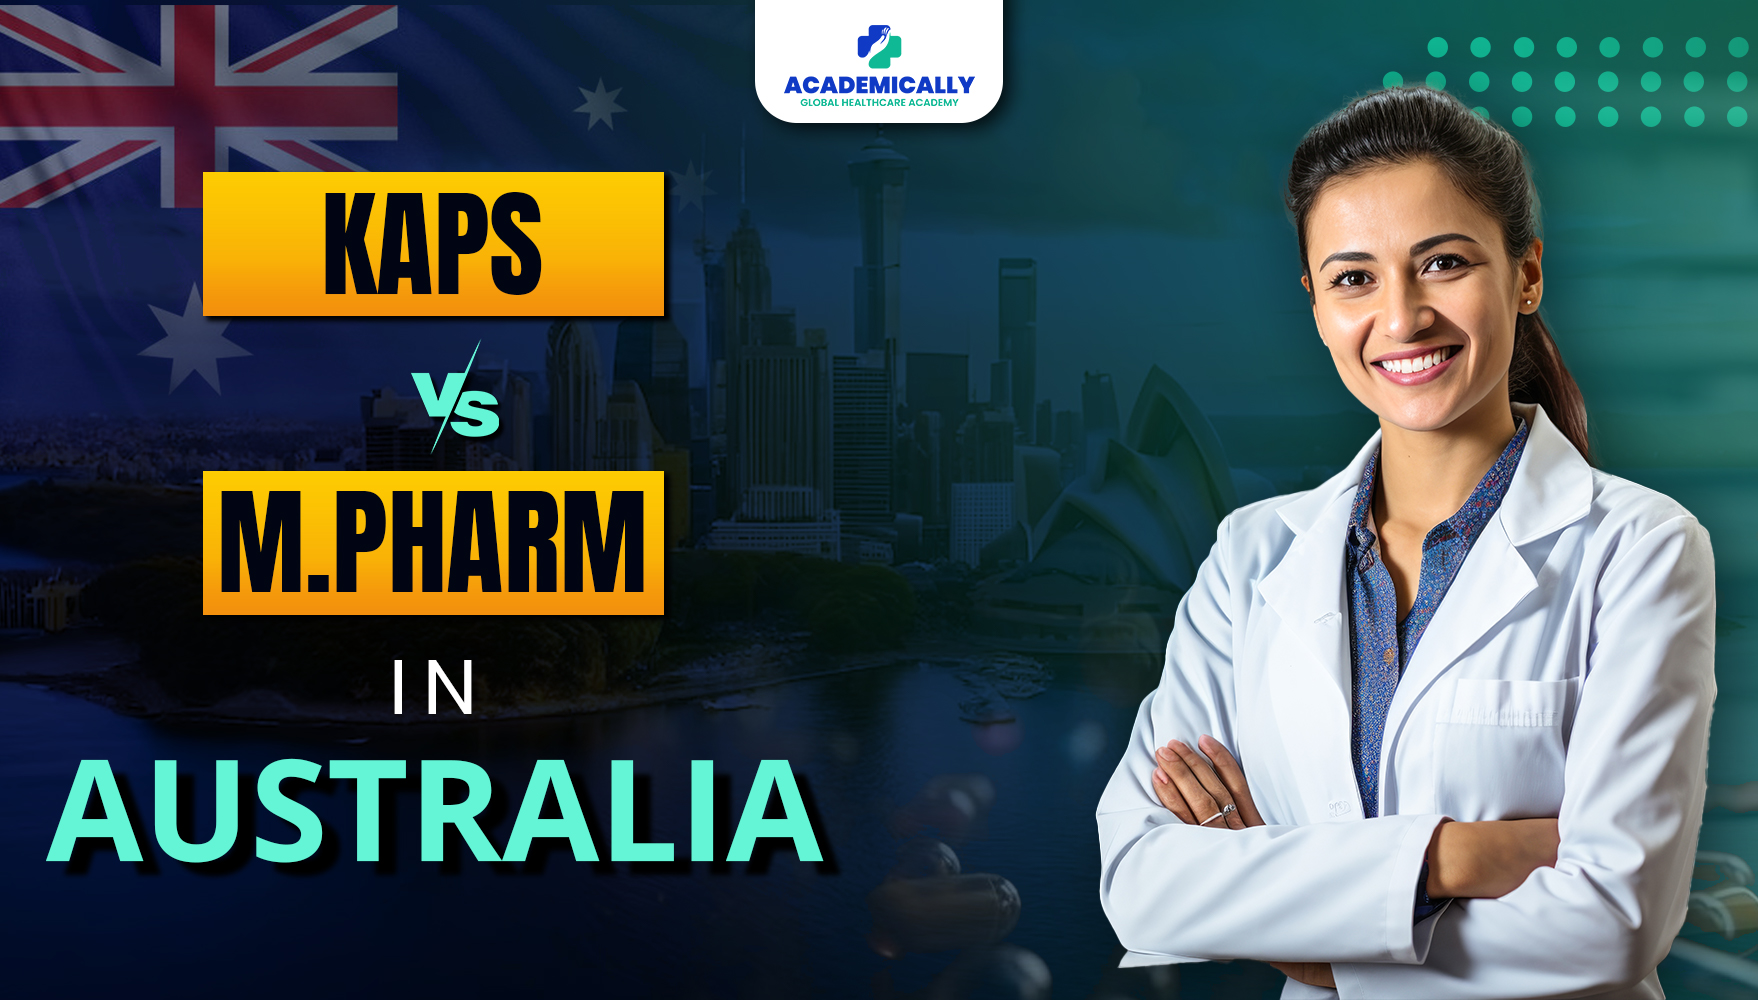 KAPS Exam VS M.Pharm in Australia